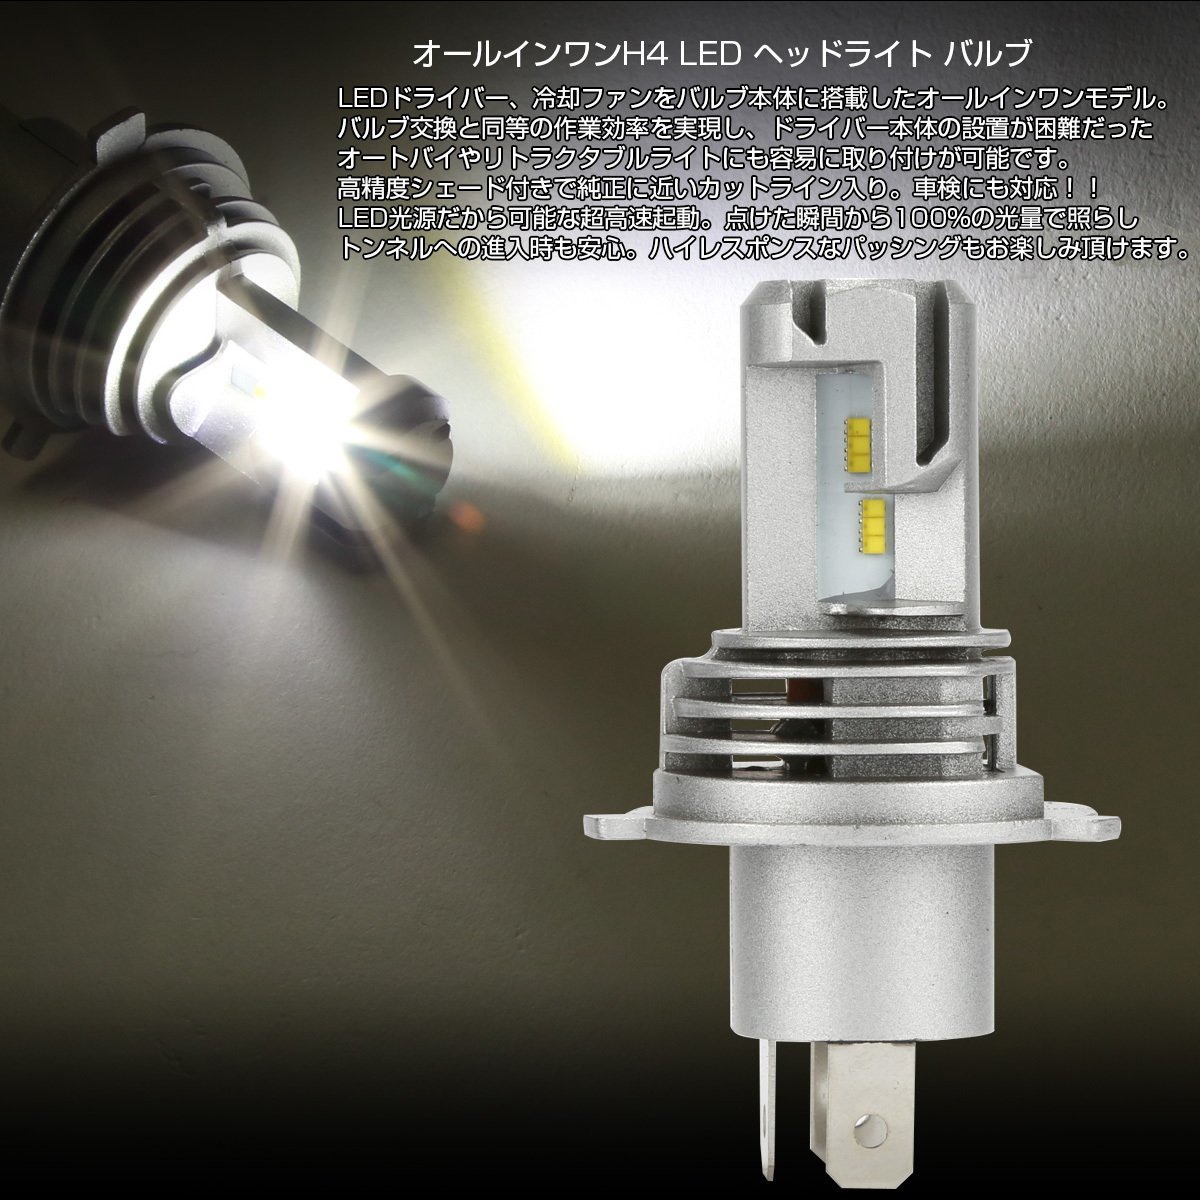 LED ヘッドライト H4 Hi/Lo 5000ルーメン オールインワン 一体型 6500K DC12V マイナスコントロール対応 無極性 2個セット H-105_画像2